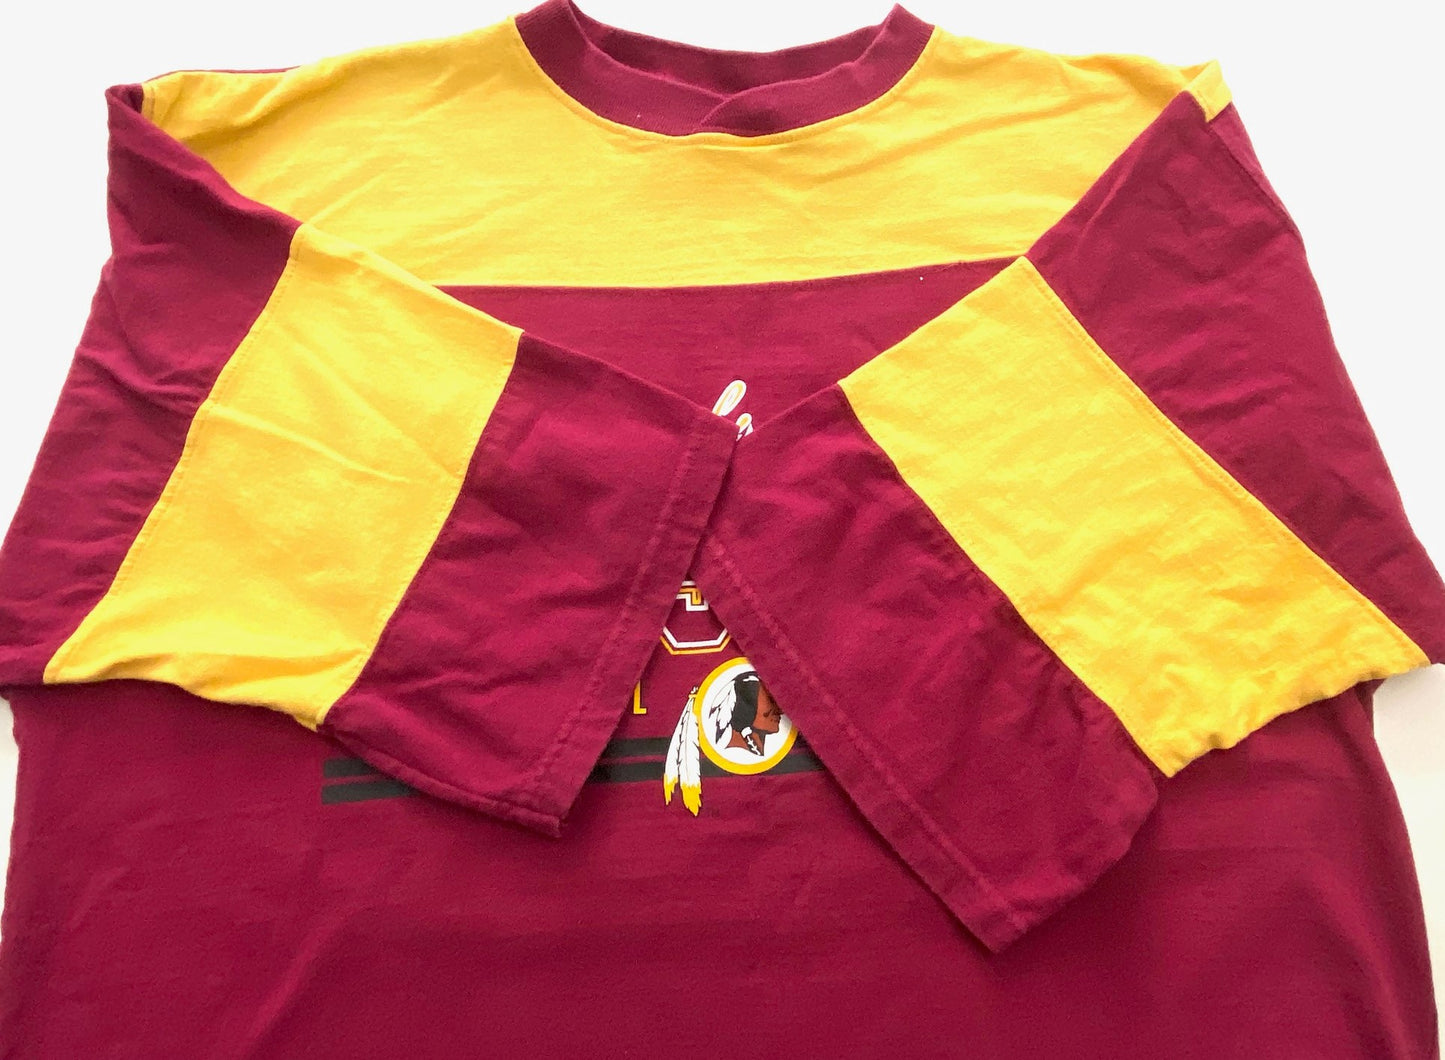 Washington Redskins NFL 1997 Vintage Team Color Half Sleeve Shirt Size Large (Used) by NFL Athletic Wear